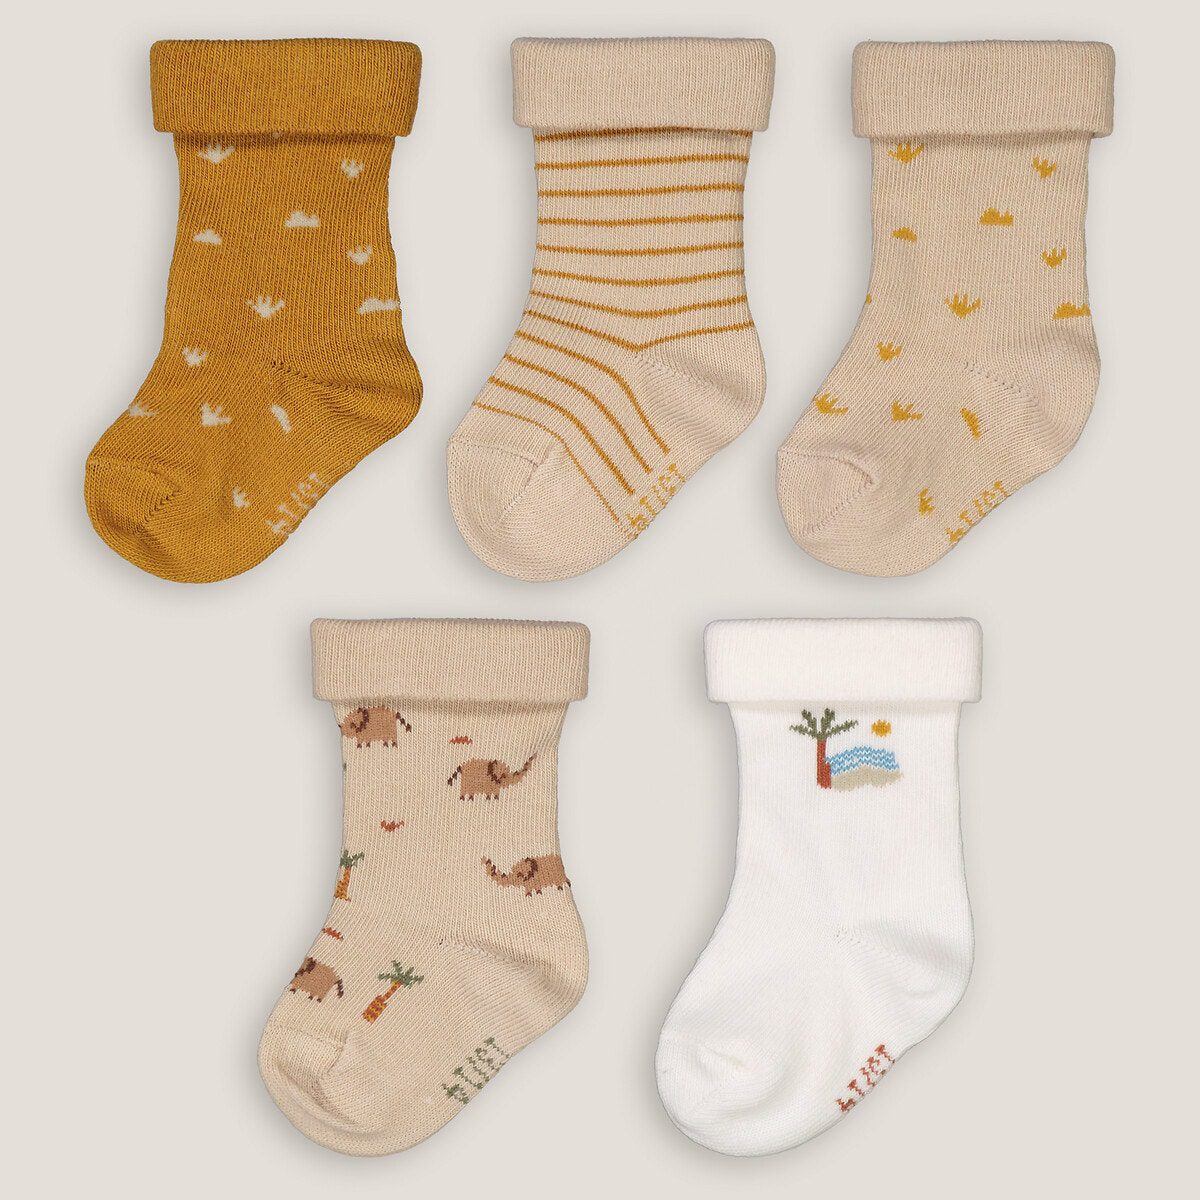 Σετ 5 ζευγάρια κάλτσες Διαφορα Χρωματα